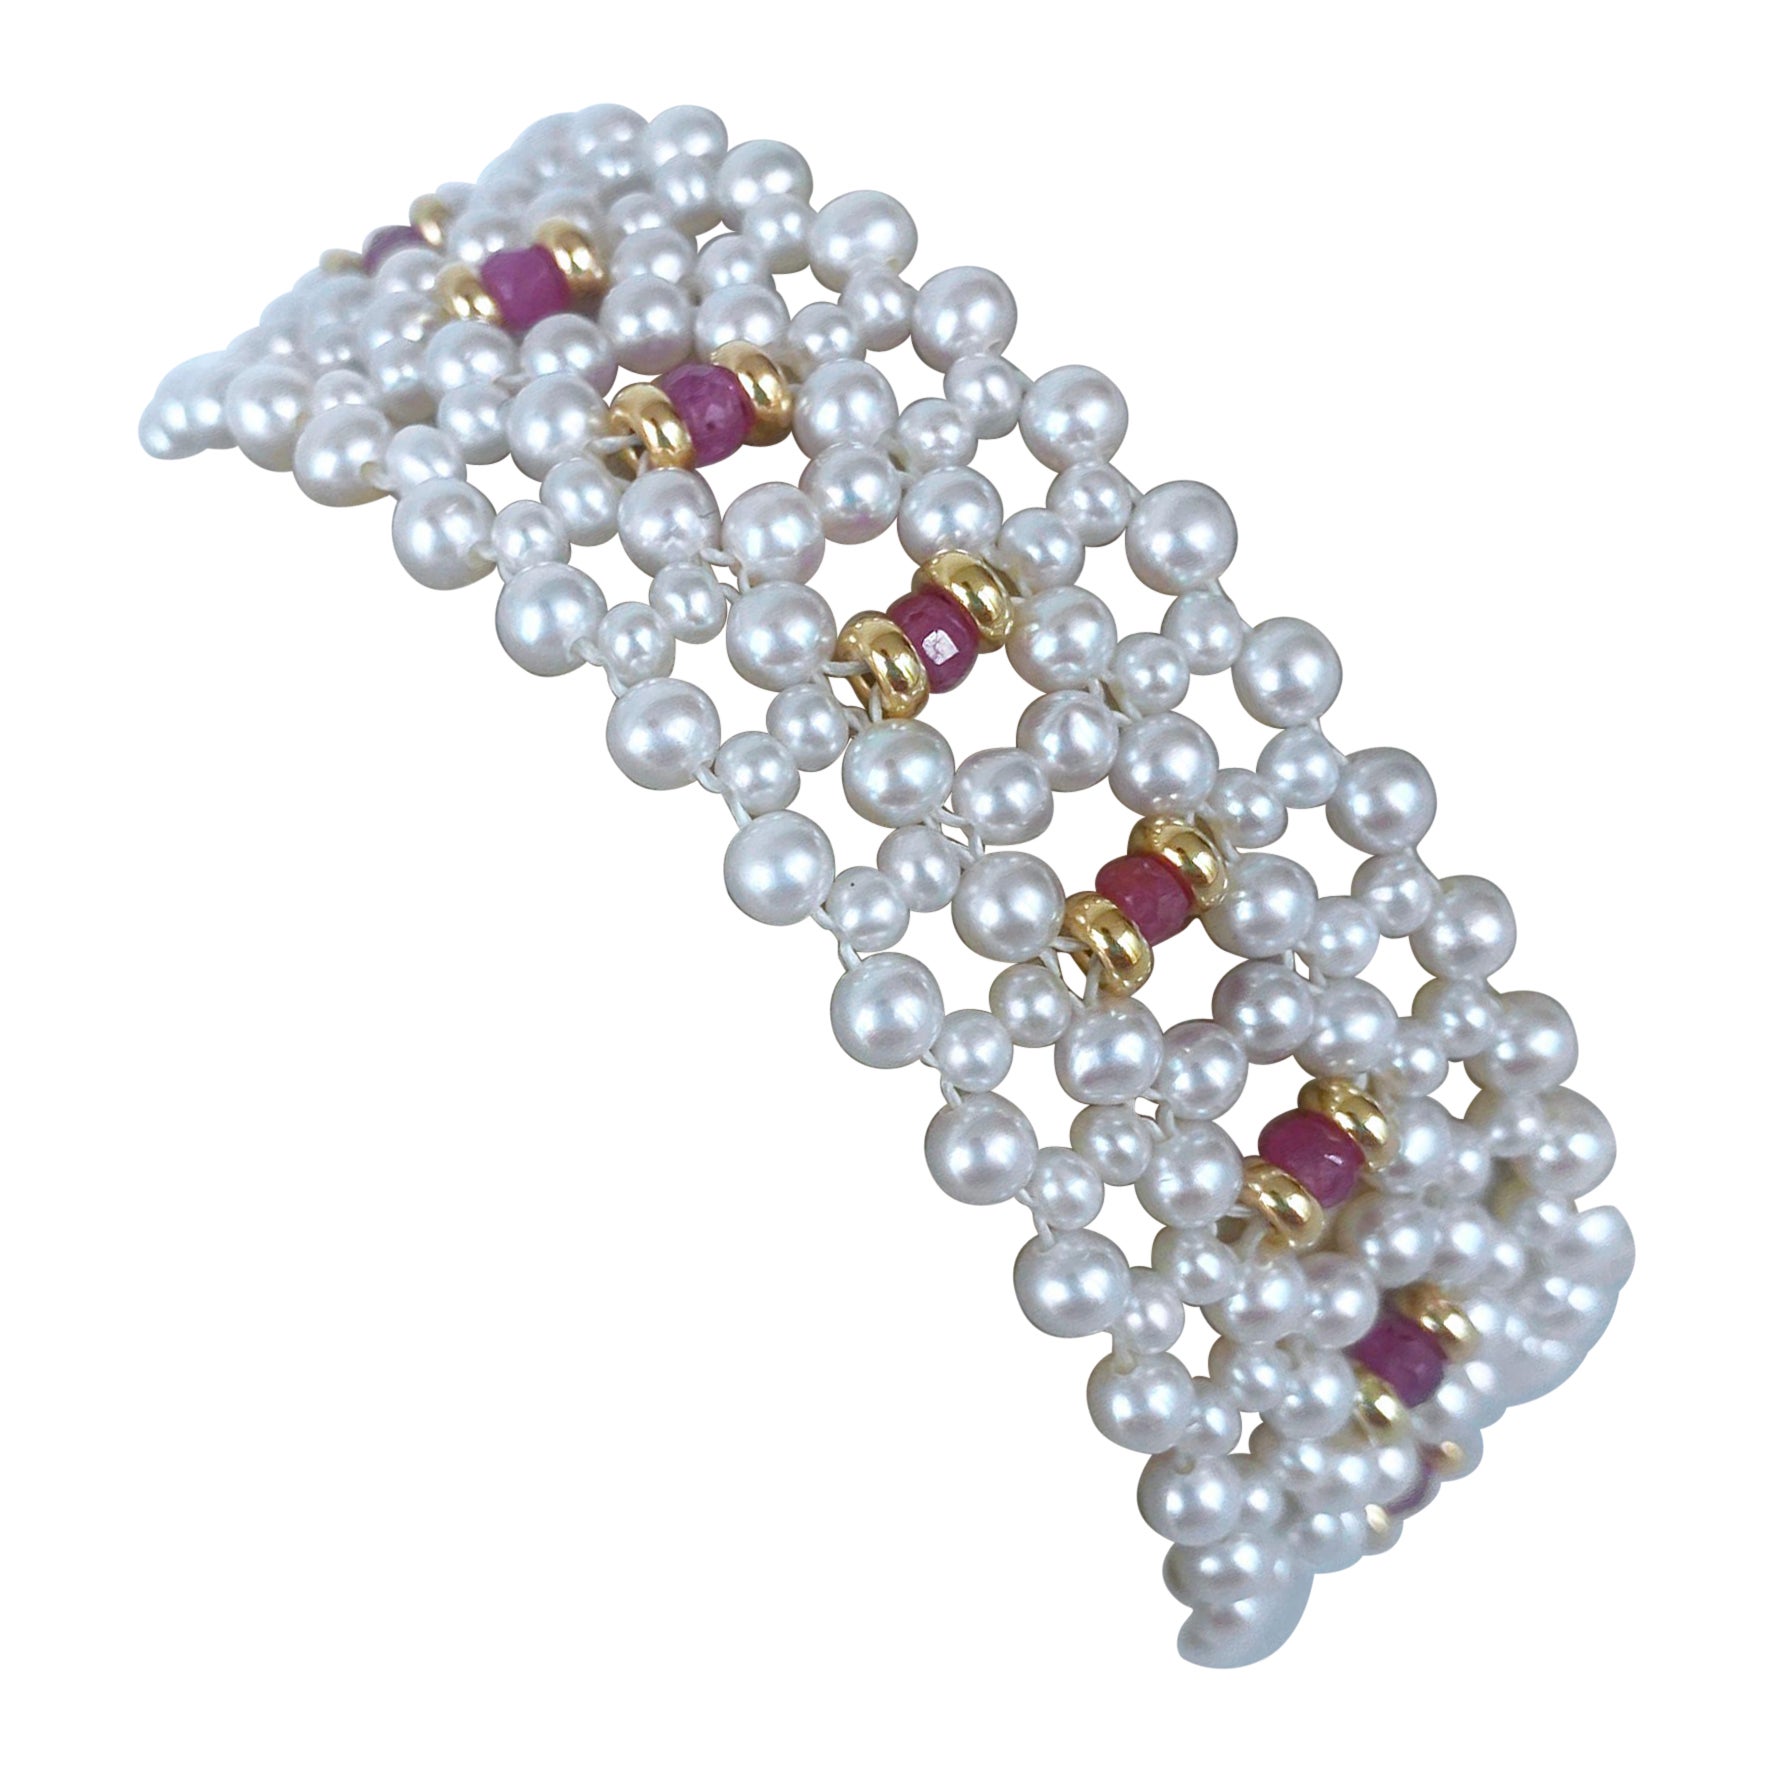 Magnifique bracelet de Marina J. Cette pièce est faite de petites perles de culture, de saphirs à facettes et d'or jaune 14k massif, tous tissés ensemble de façon complexe pour former une fine dentelle. Les perles présentent un éclat magnifique et